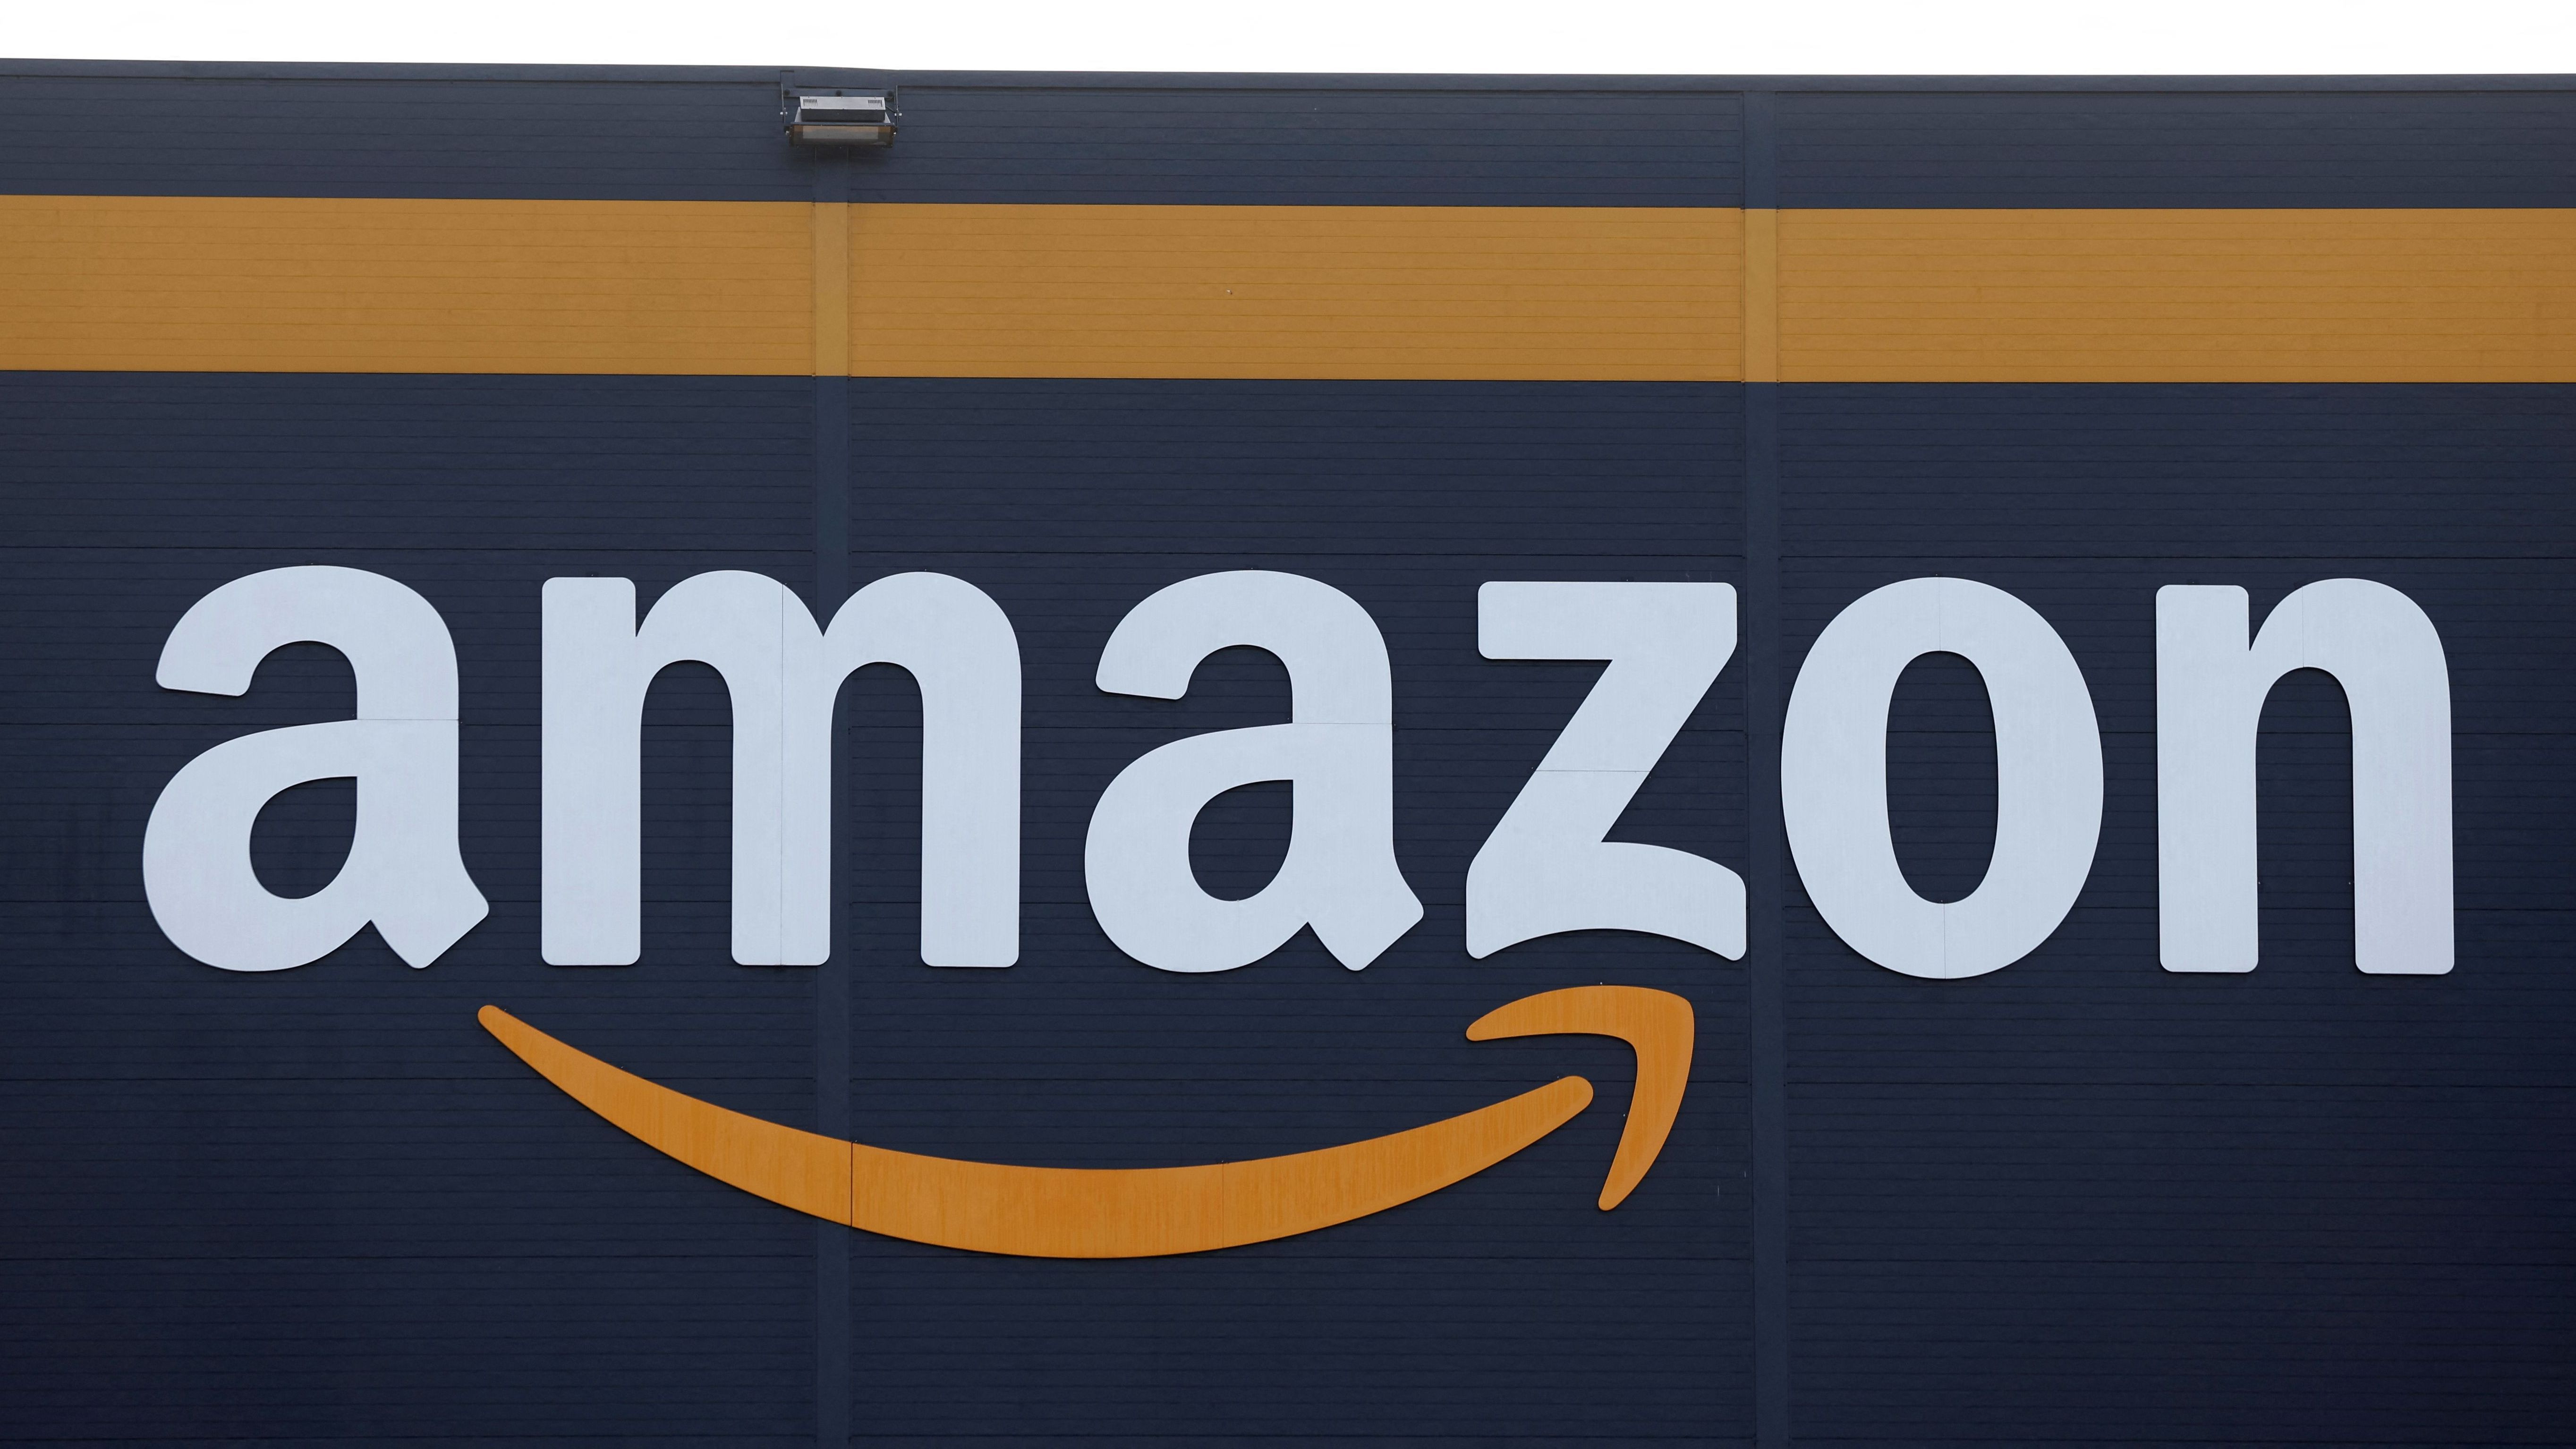 Onlineversandgigant Amazon besetzt mit rund 1,47 Billionen US-Dollar&nbsp; Platz fünf der wertvollsten Unternehmen weltweit.